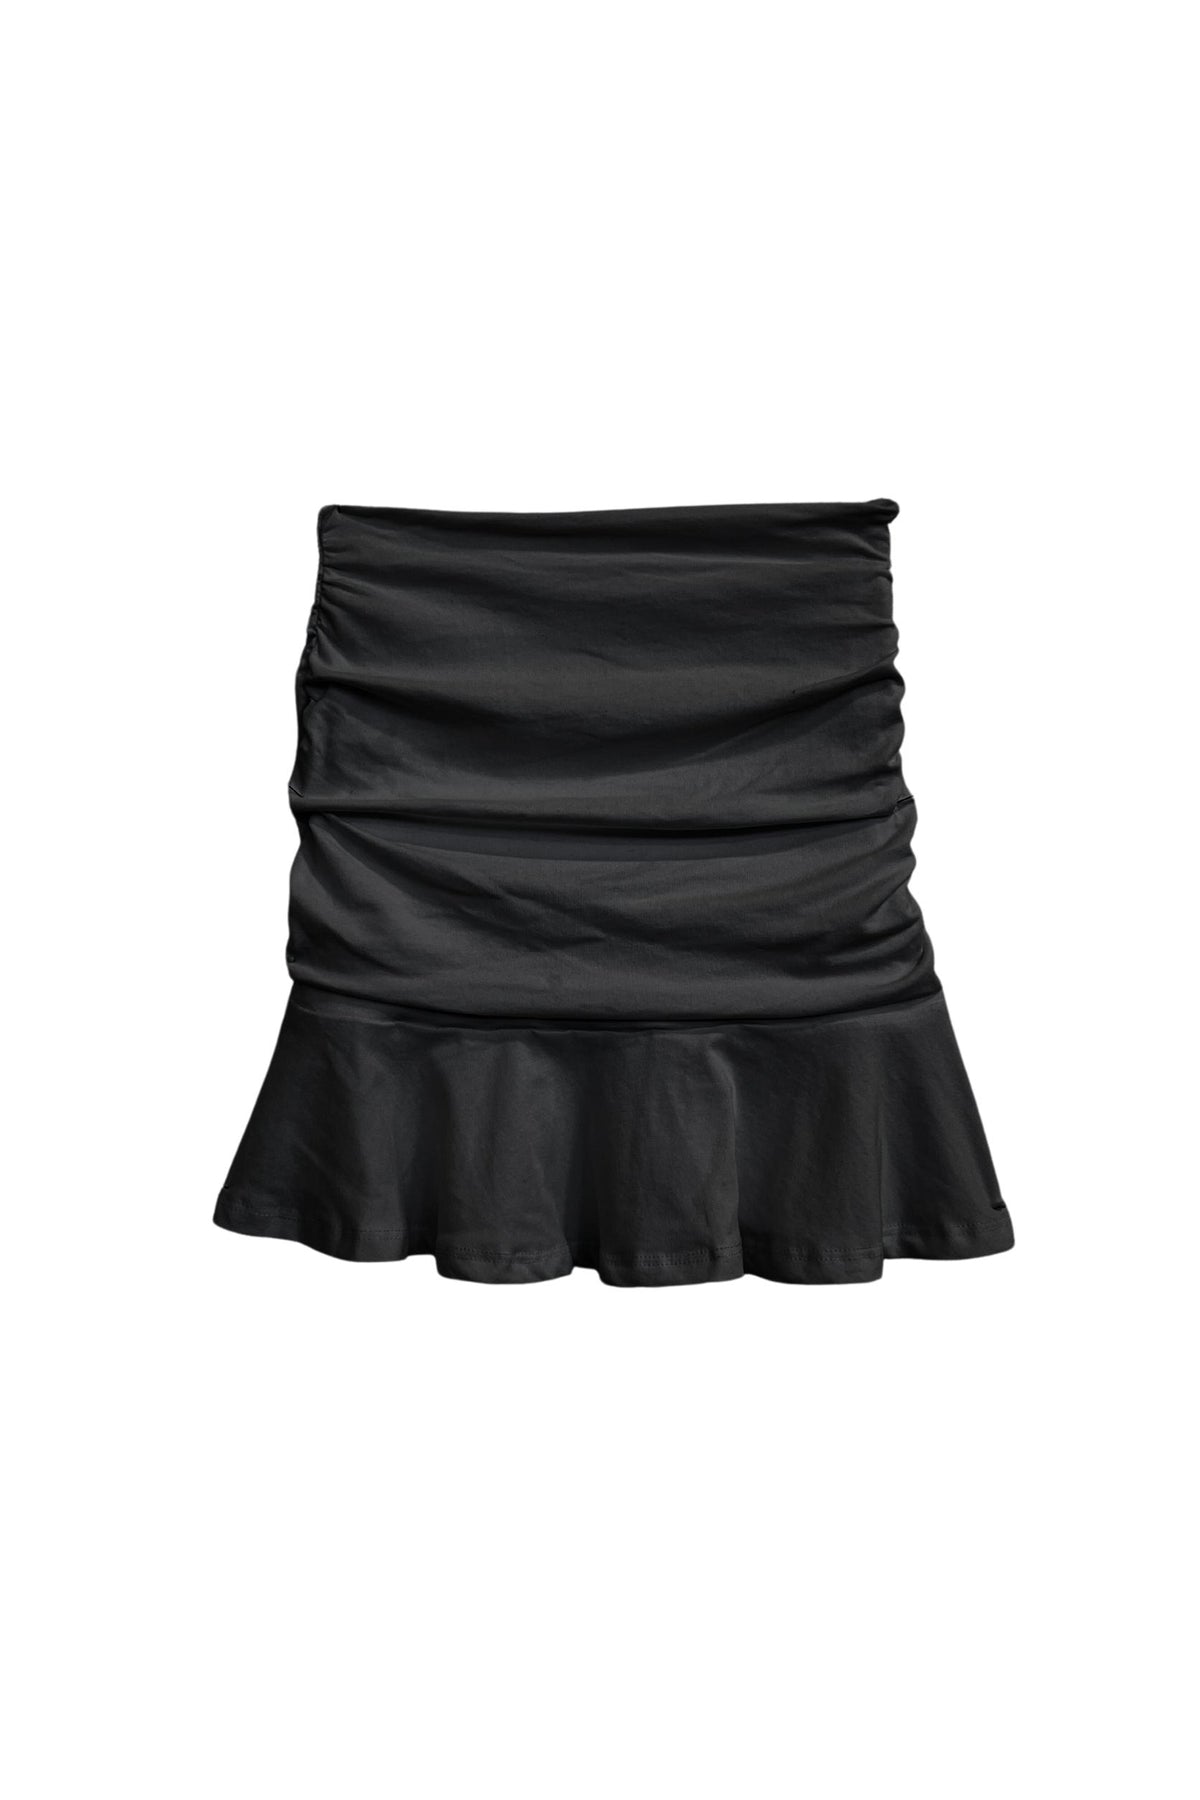 KatieJ NYC - Tween - Black Aspen Mini Skirt